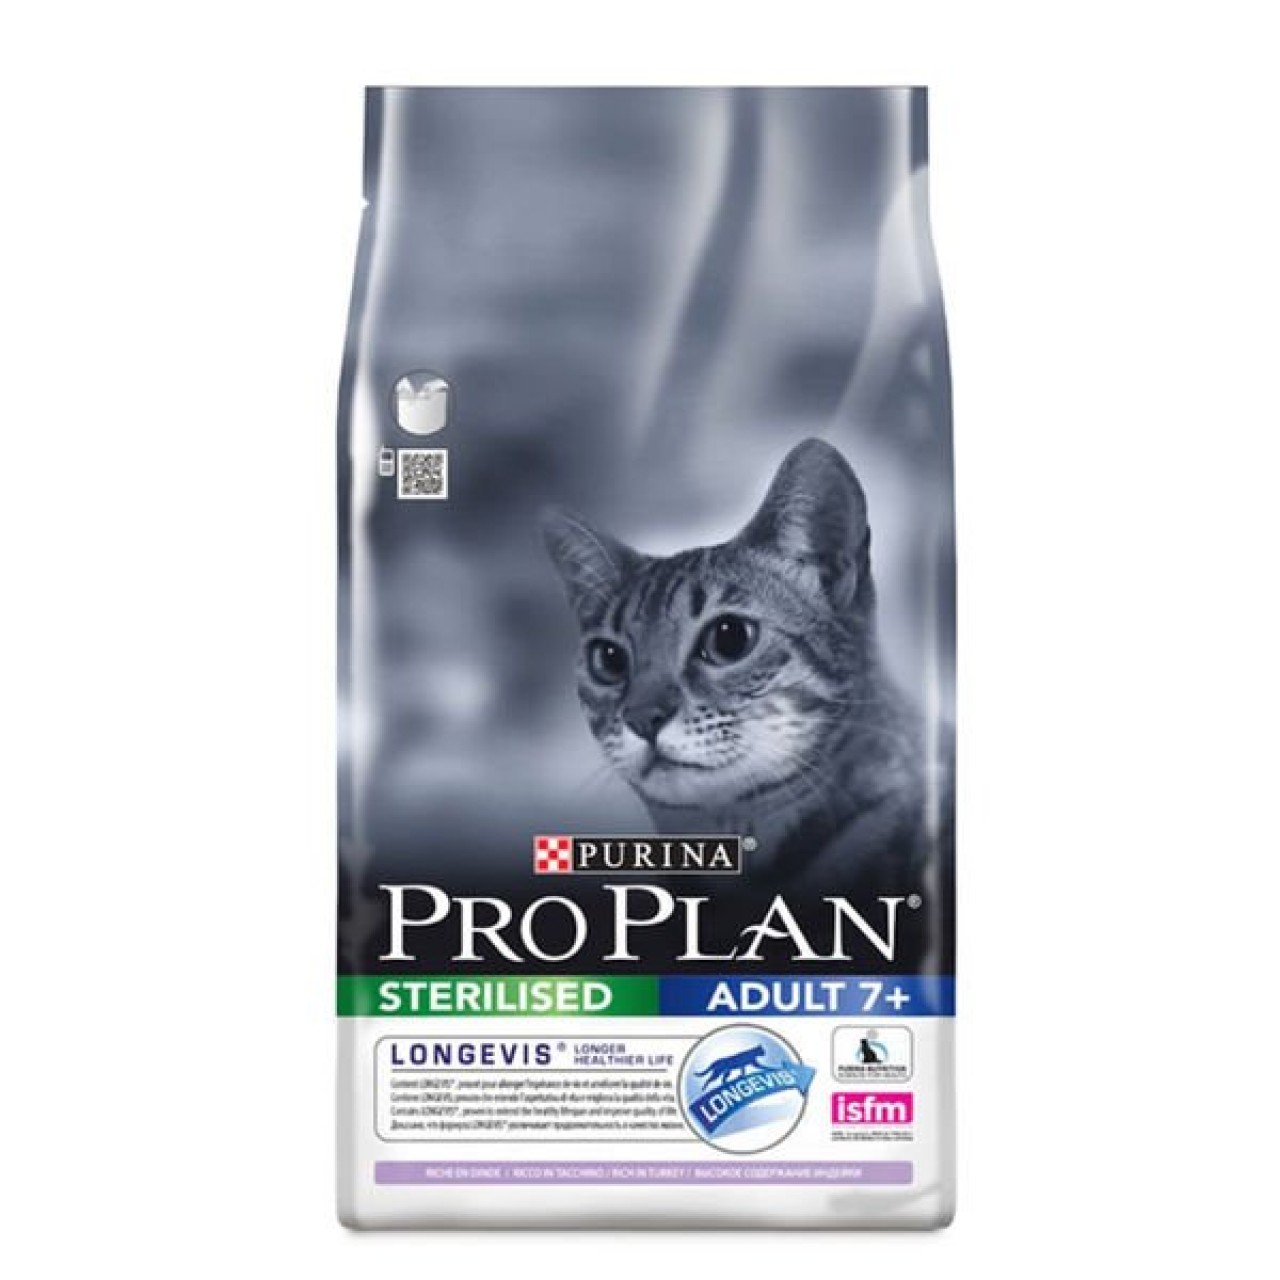 Pro plan elements для кошек. Purina Pro Plan для кошек Sterilised 1.5 индейка. Пурина Проплан для кошек с чувствительным пищеварением сухой. Проплан для кошек сухой Деликат. Корм Проплан для кошек 10кг.